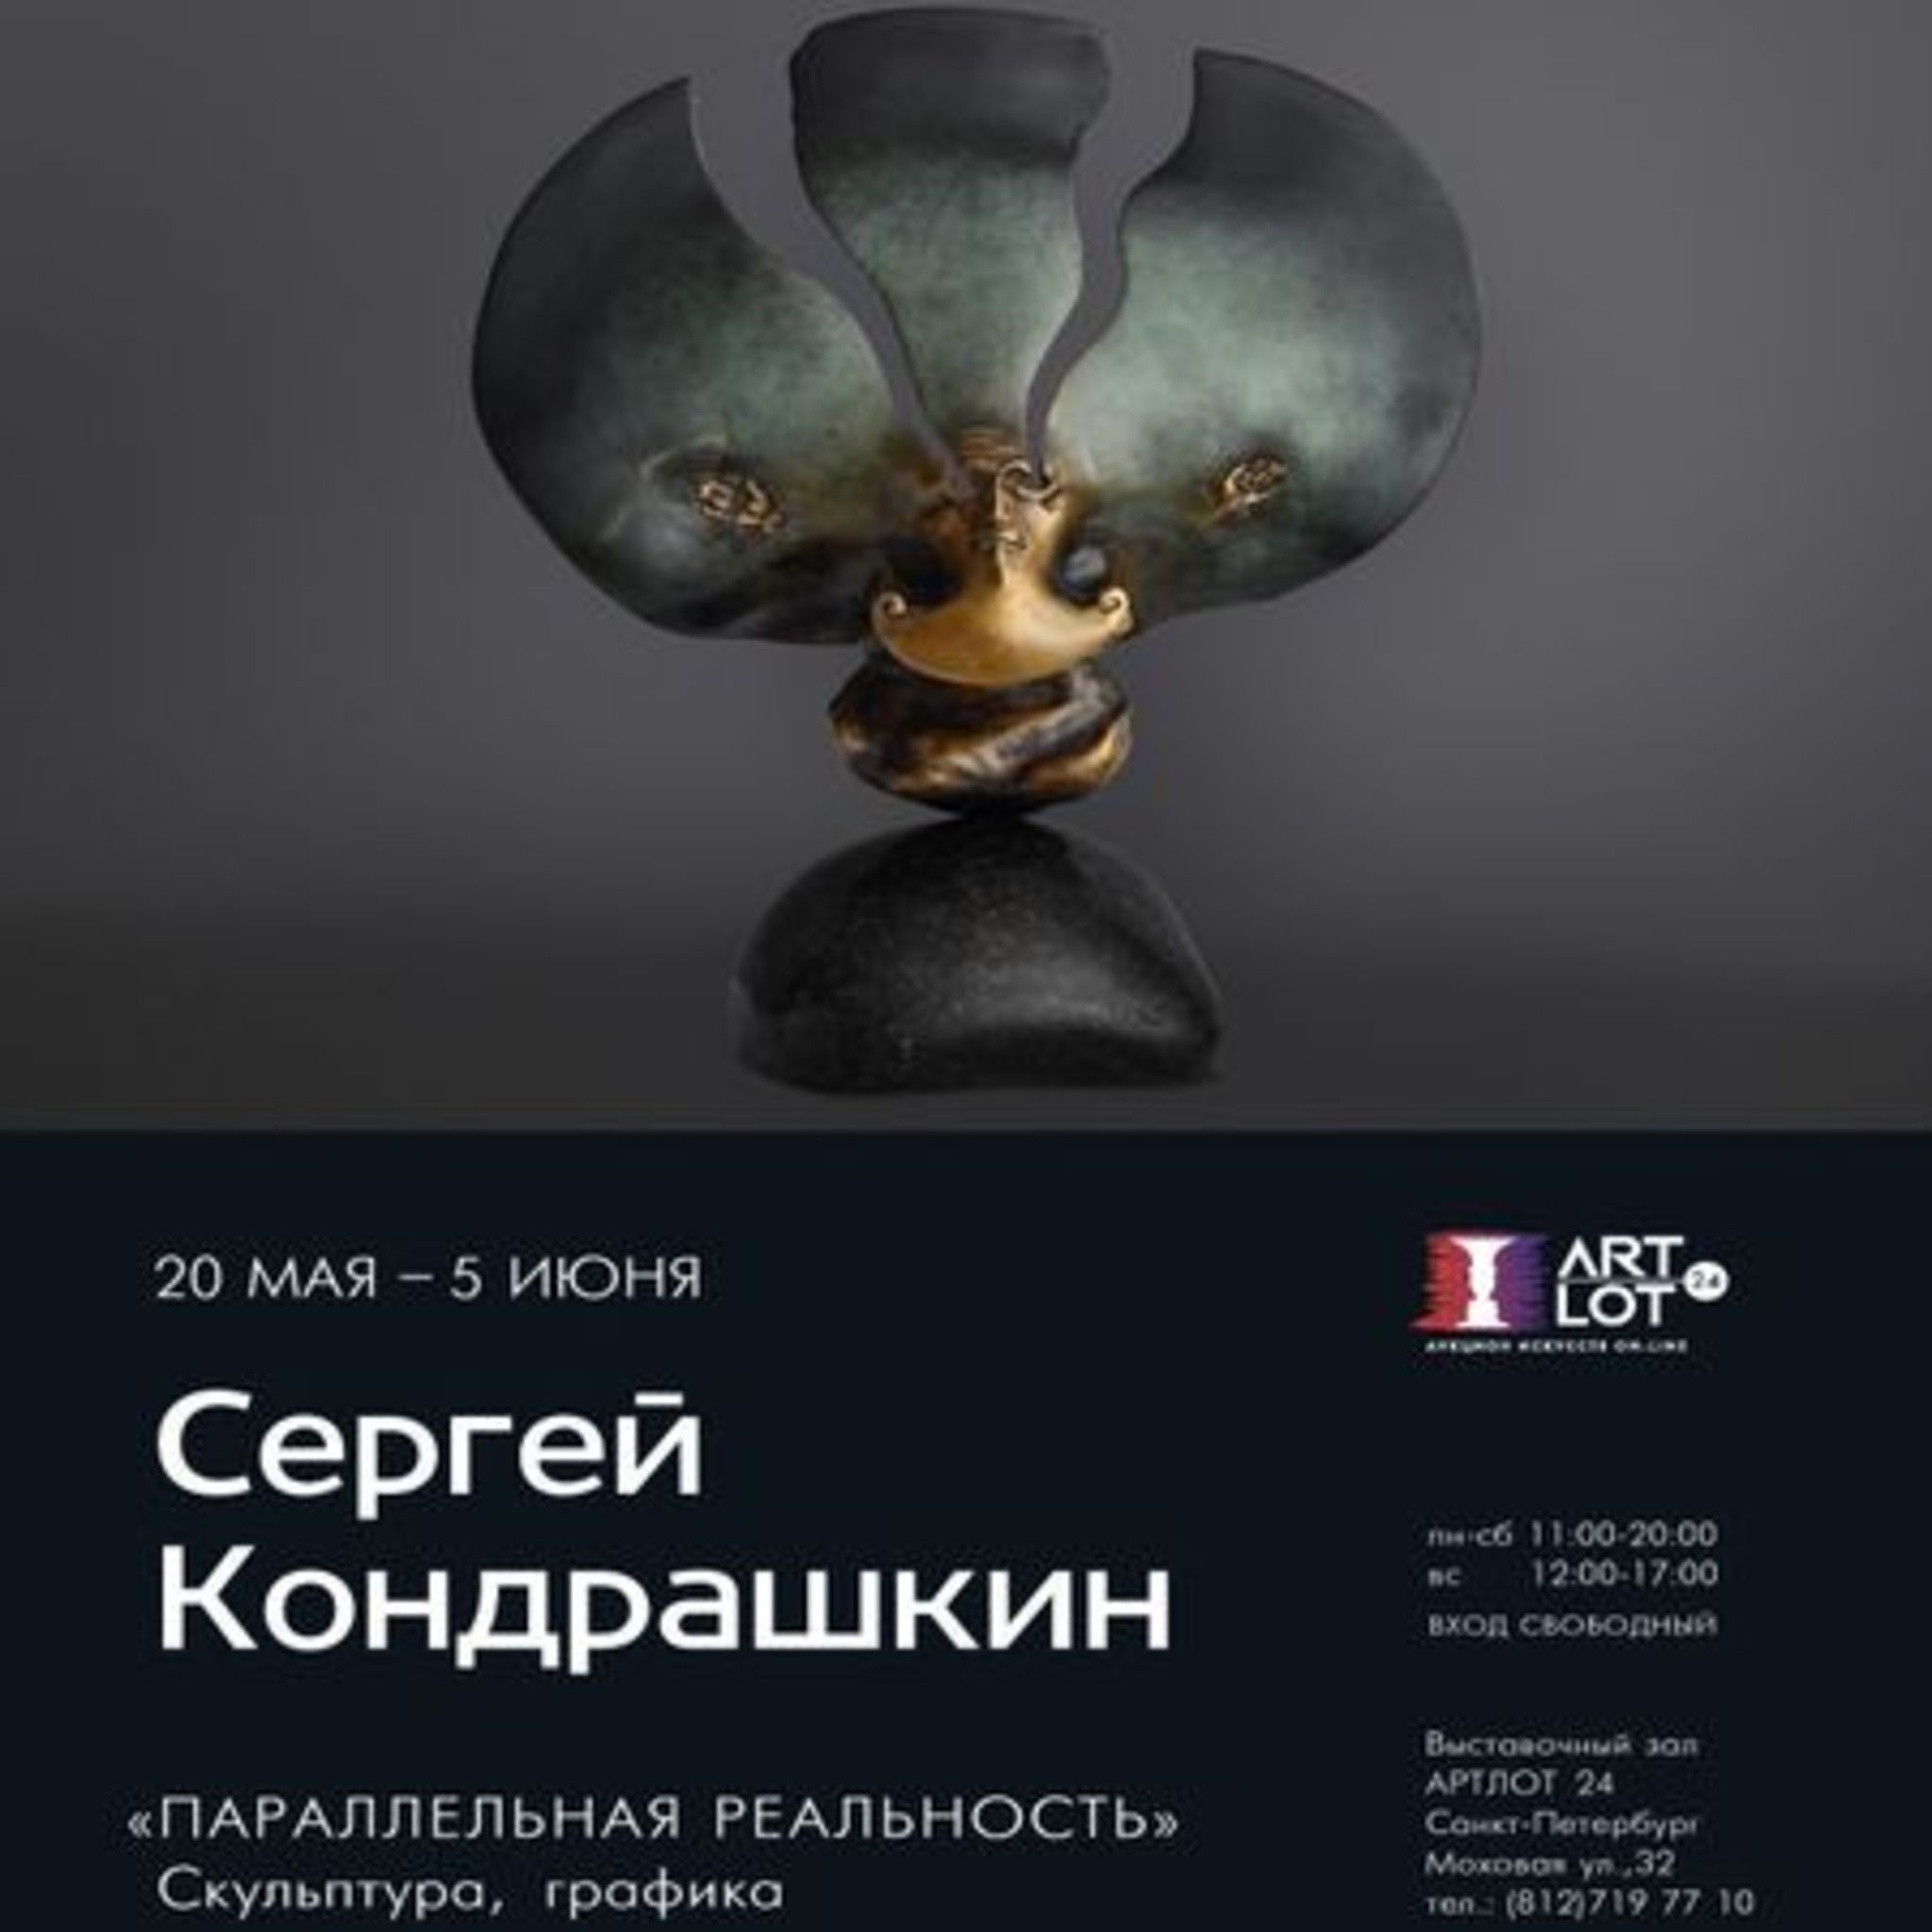 Sergei Kondrashkina Exhibition parallel reality